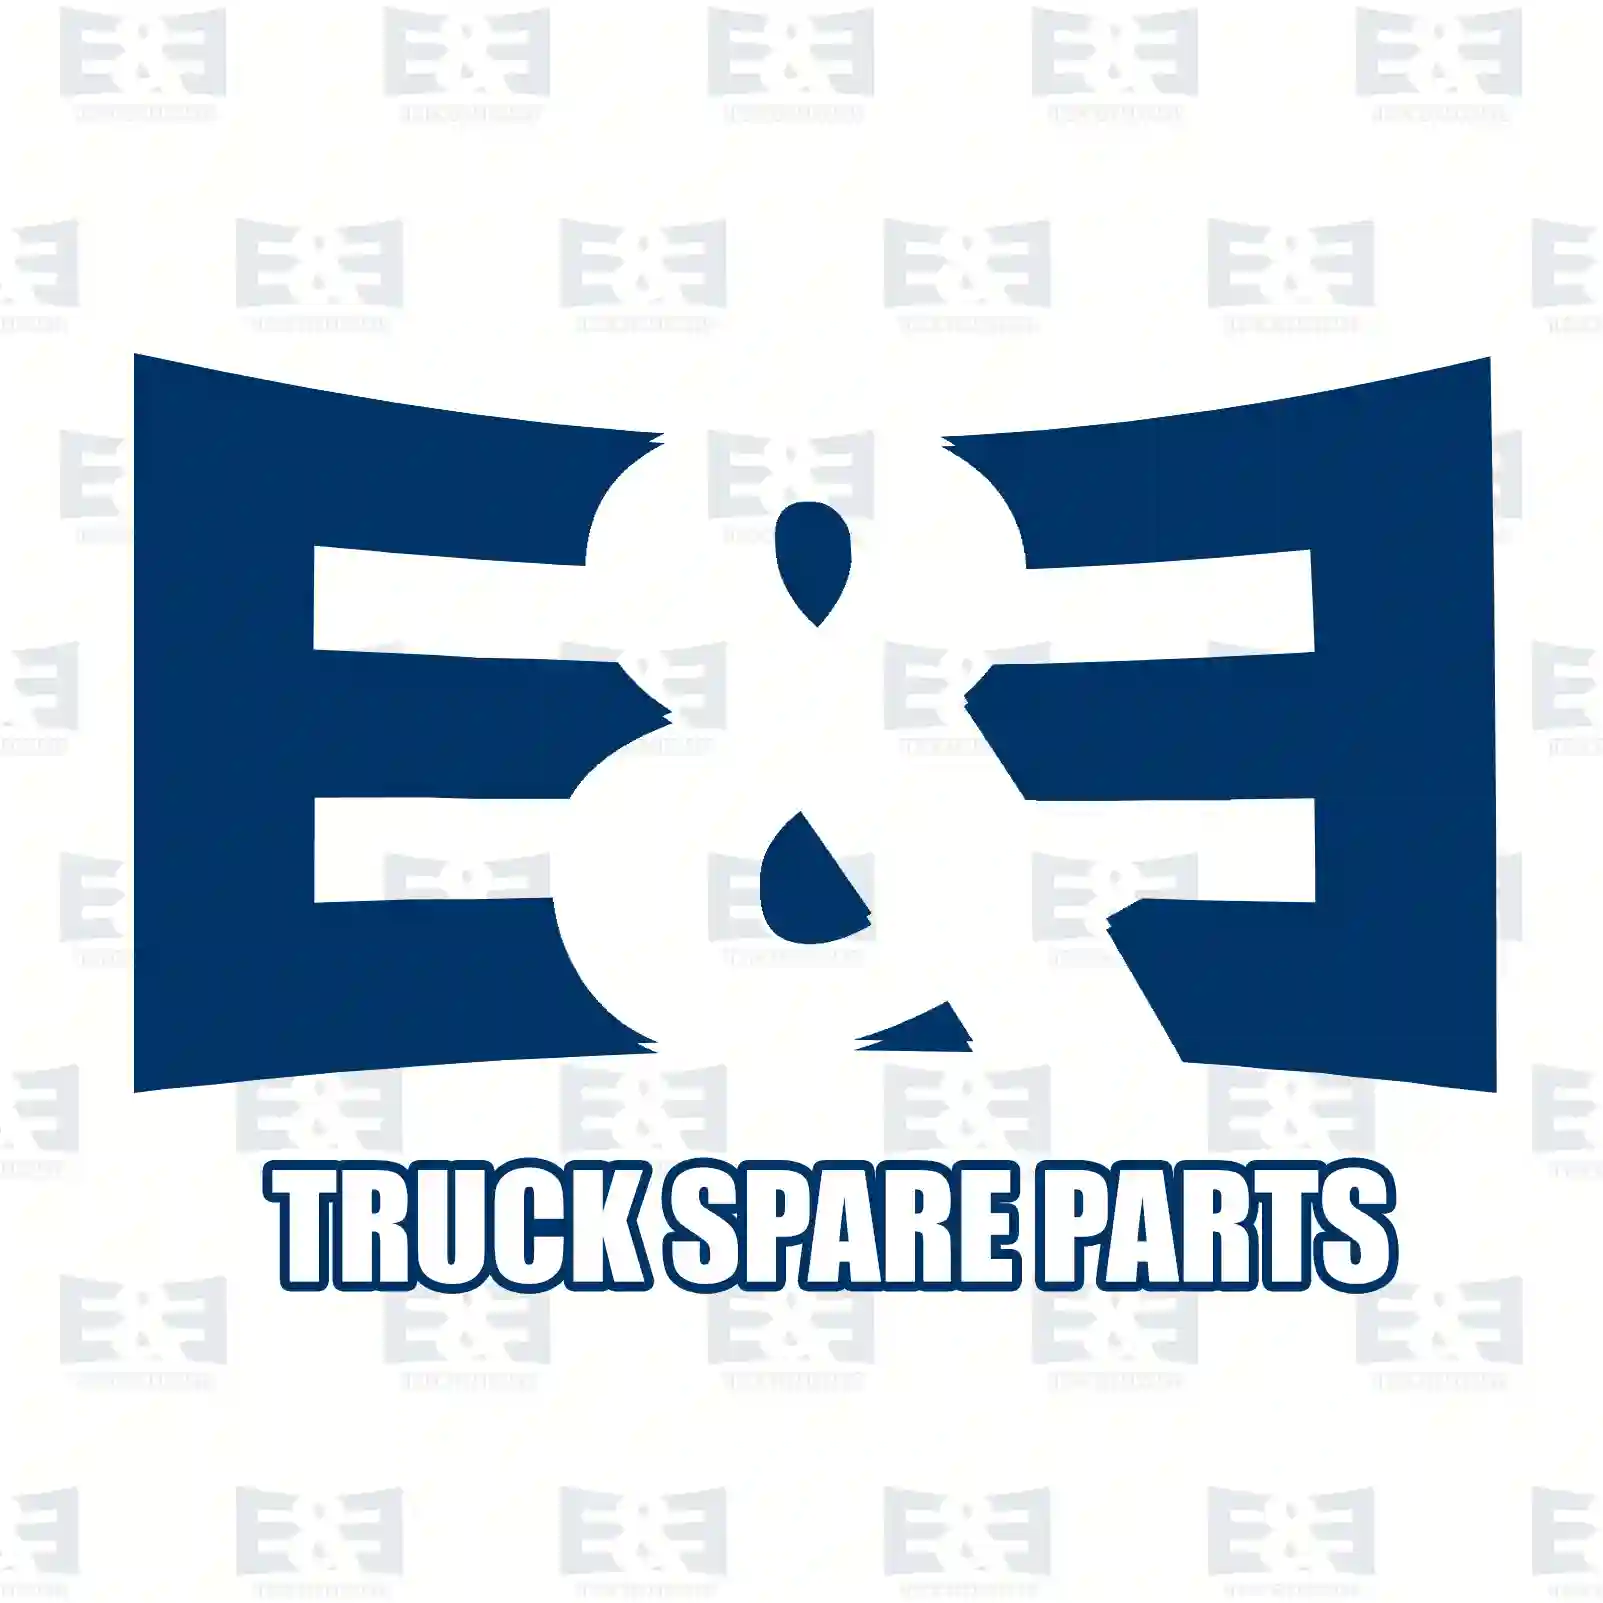 Bleeder valve, 2E2278505, 0002600258, 3362640089, 6635617 ||  2E2278505 E&E Truck Spare Parts | Truck Spare Parts, Auotomotive Spare Parts Bleeder valve, 2E2278505, 0002600258, 3362640089, 6635617 ||  2E2278505 E&E Truck Spare Parts | Truck Spare Parts, Auotomotive Spare Parts